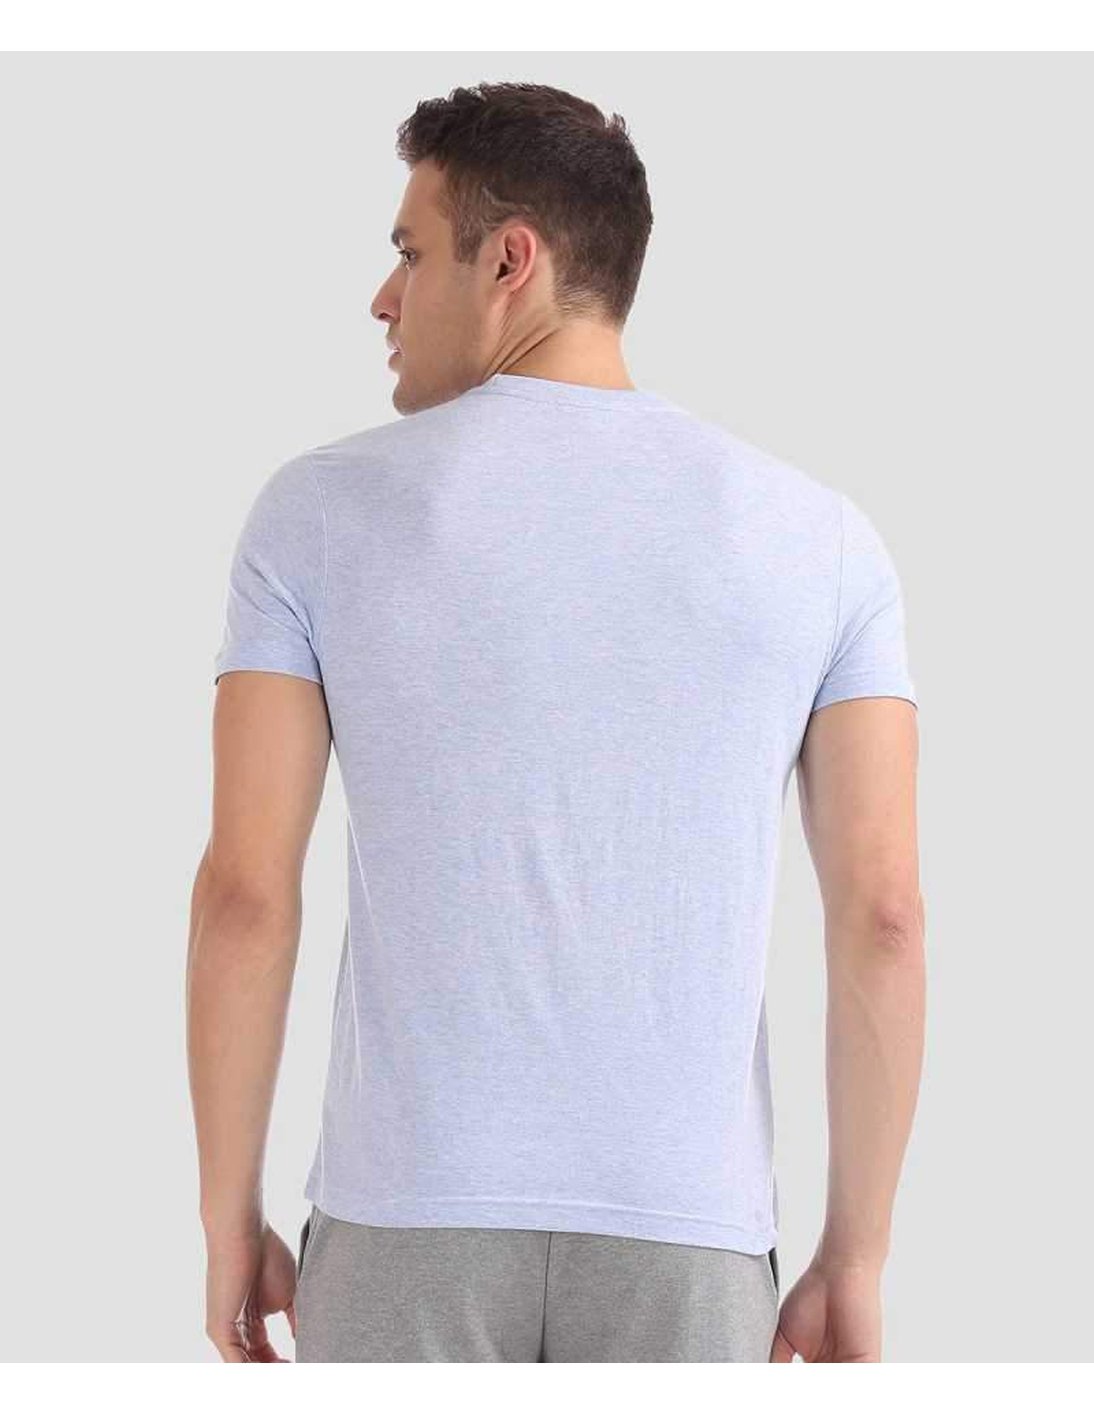 U.S. Polo Assn. Cotton Casual Blue T-shirt For Men - Stilento